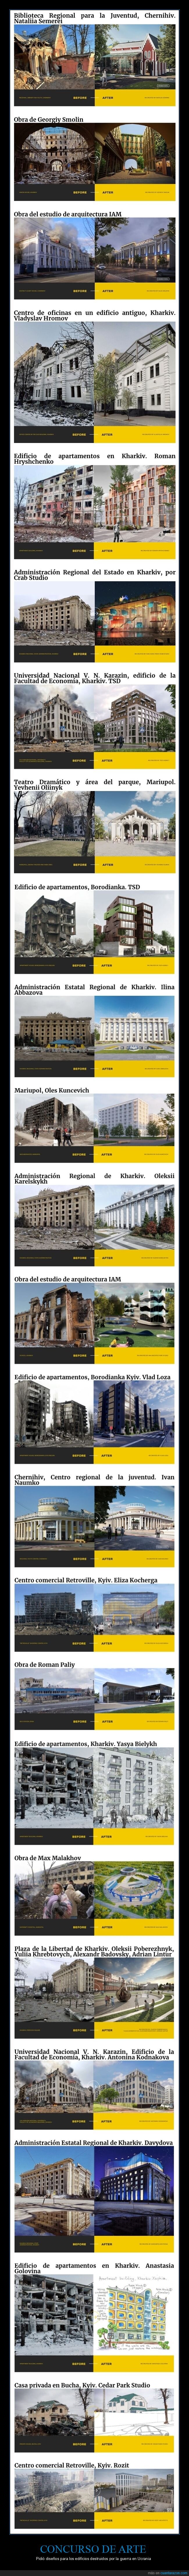 arte,concurso,destruidos,edificios,guerra,ucrania